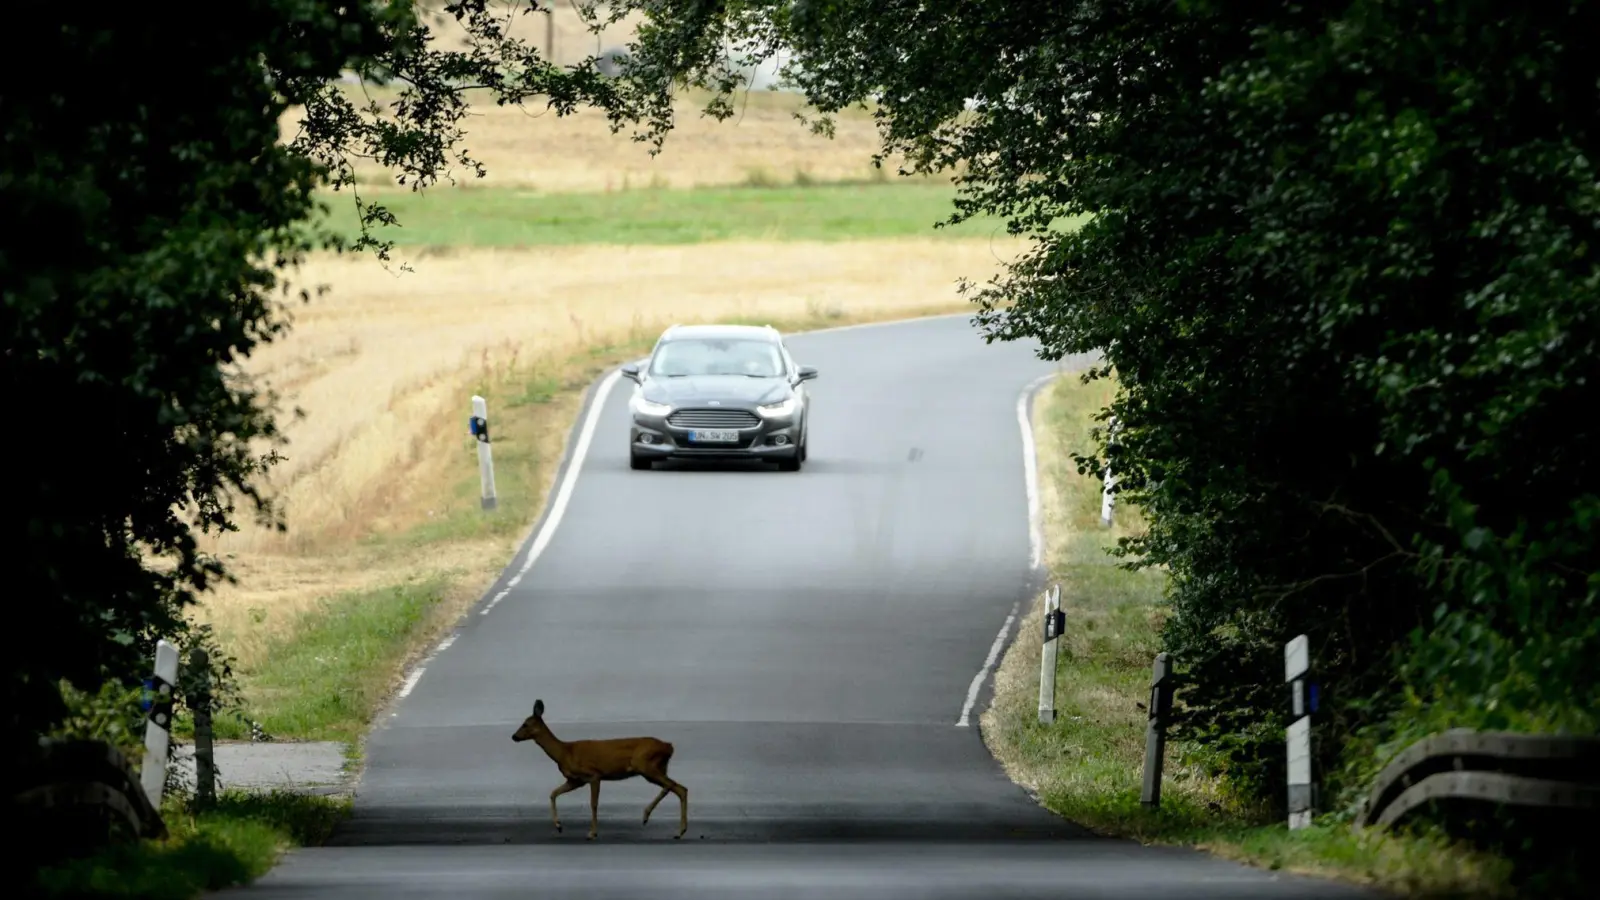 War&#39;s das schon? Vorsicht, kreuzt ein Wildtier die Straße, ist auch immer mit Nachzüglern zu rechnen. (Foto: Arne Dedert/dpa/dpa-tmn)